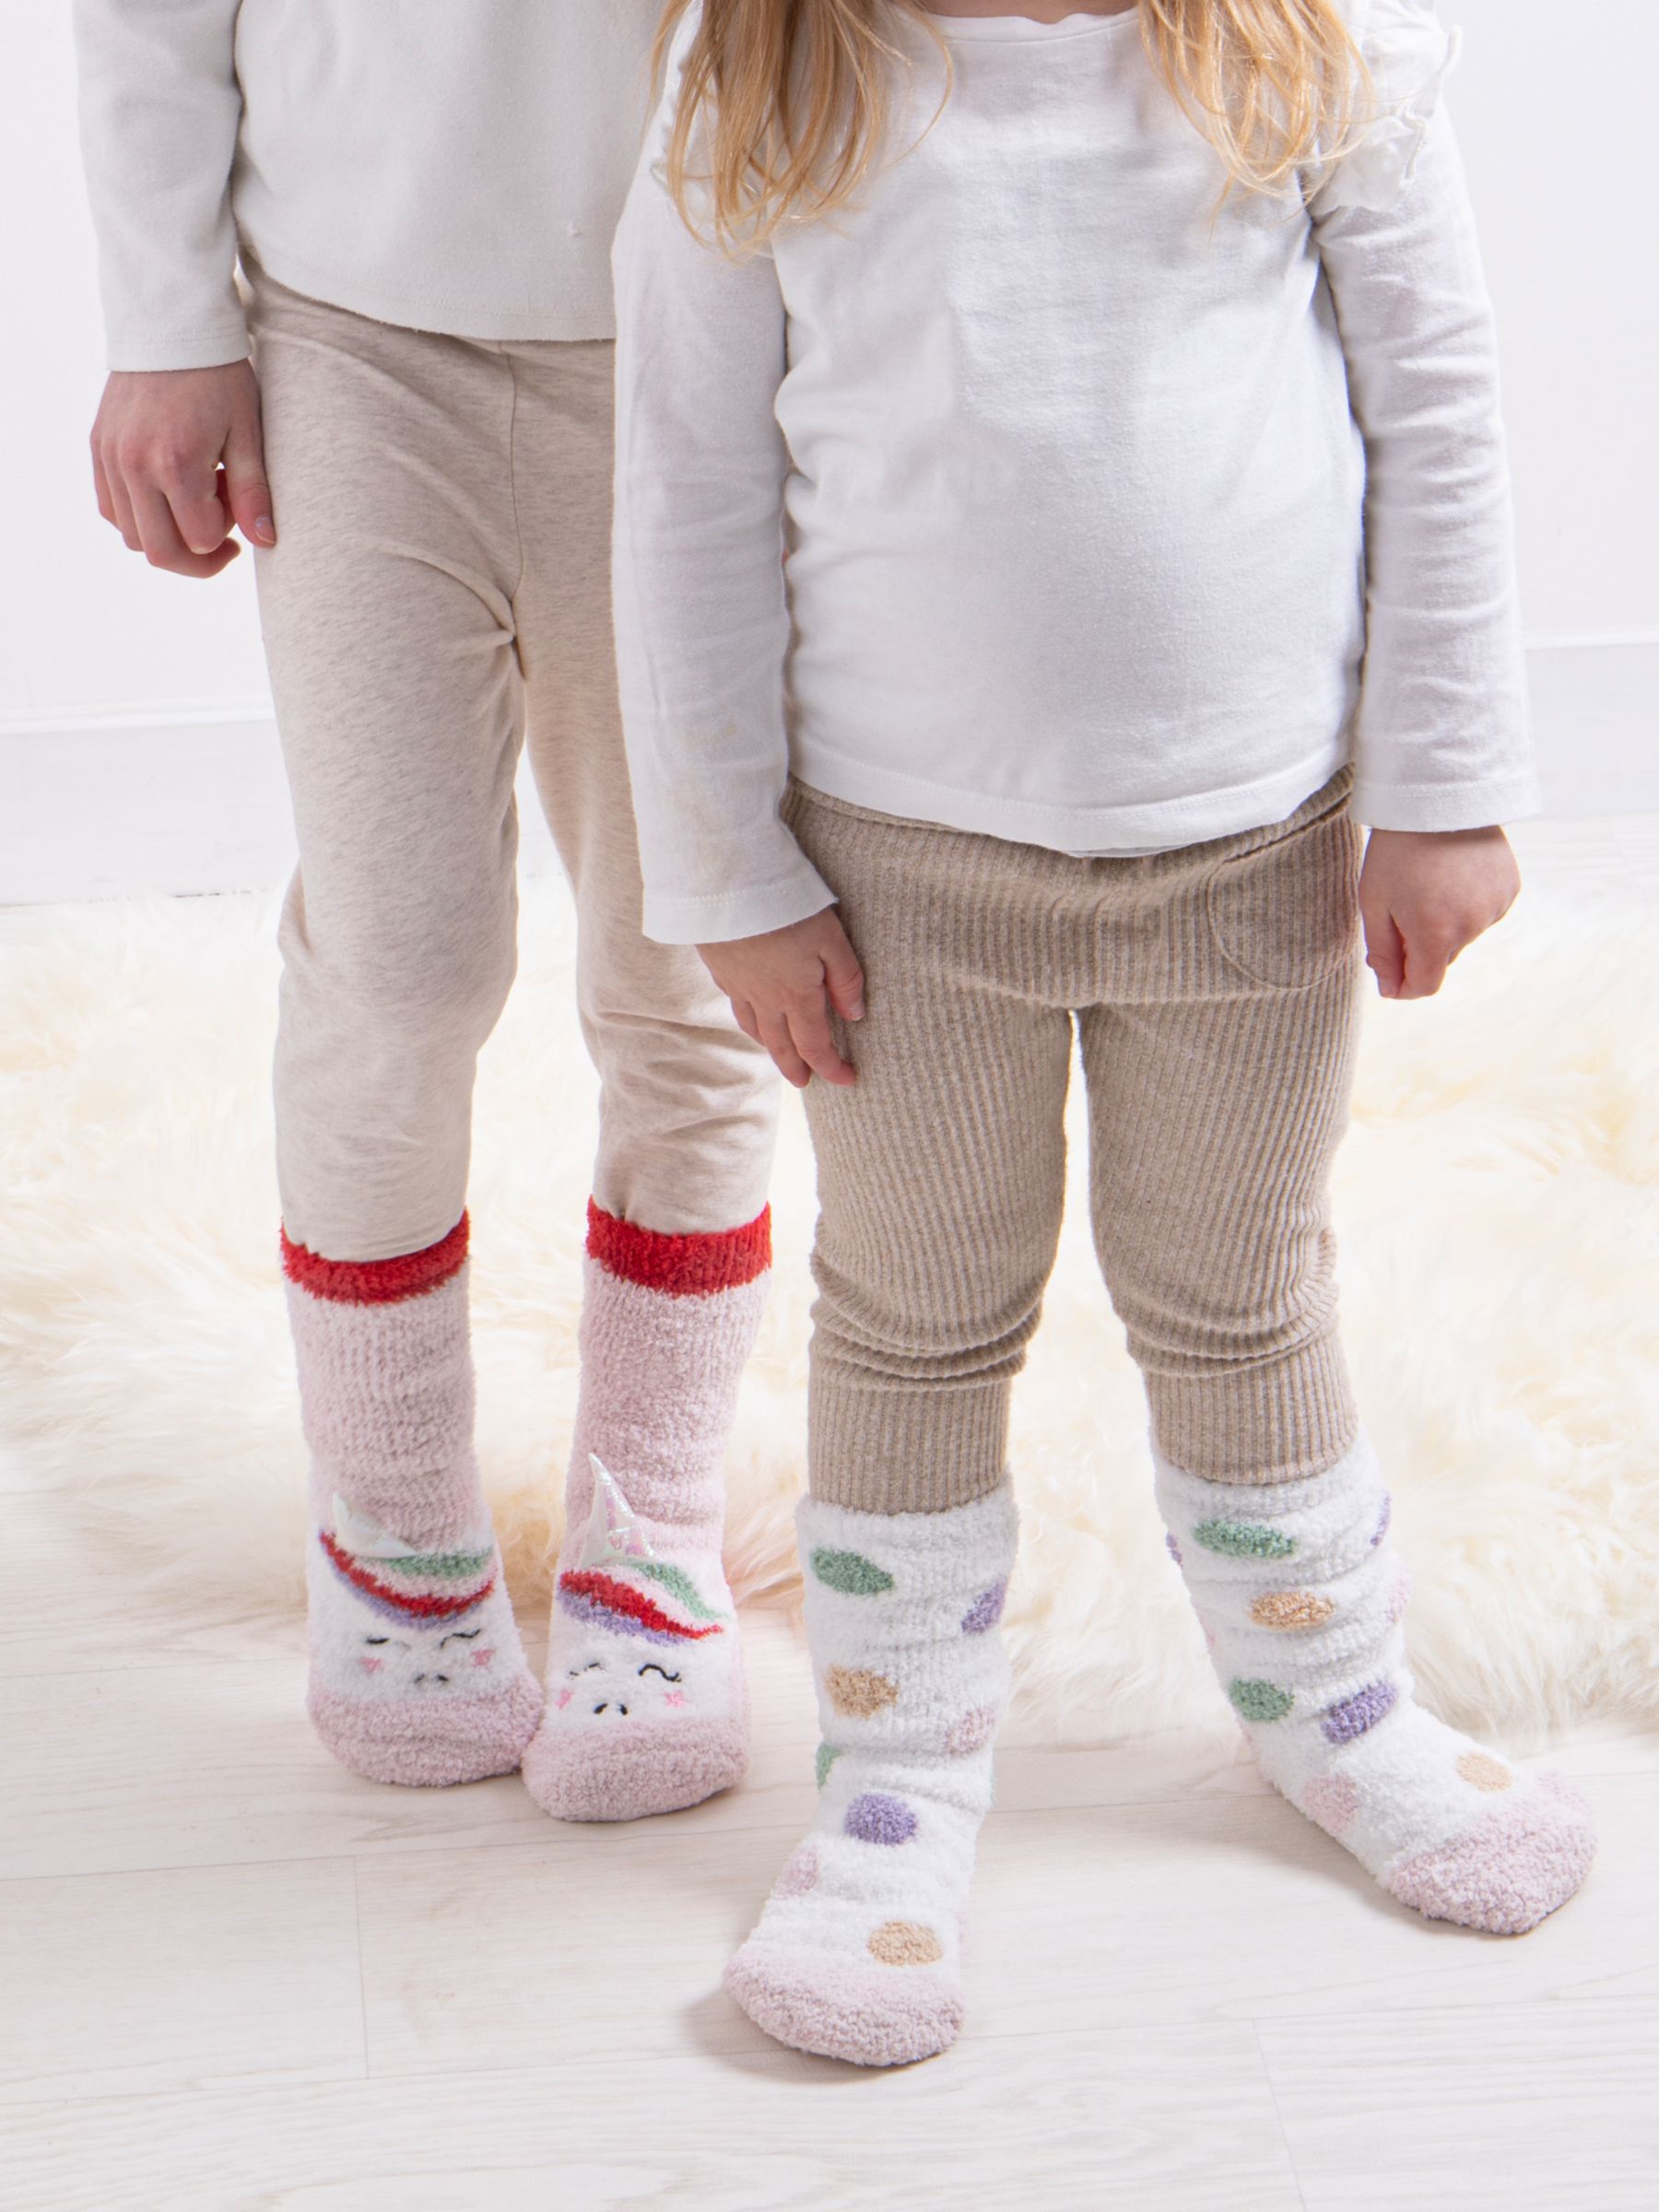 totes Kids' Unicorn Spot Slipper Socks, Pack of 2, White/Multi, 2-6 years